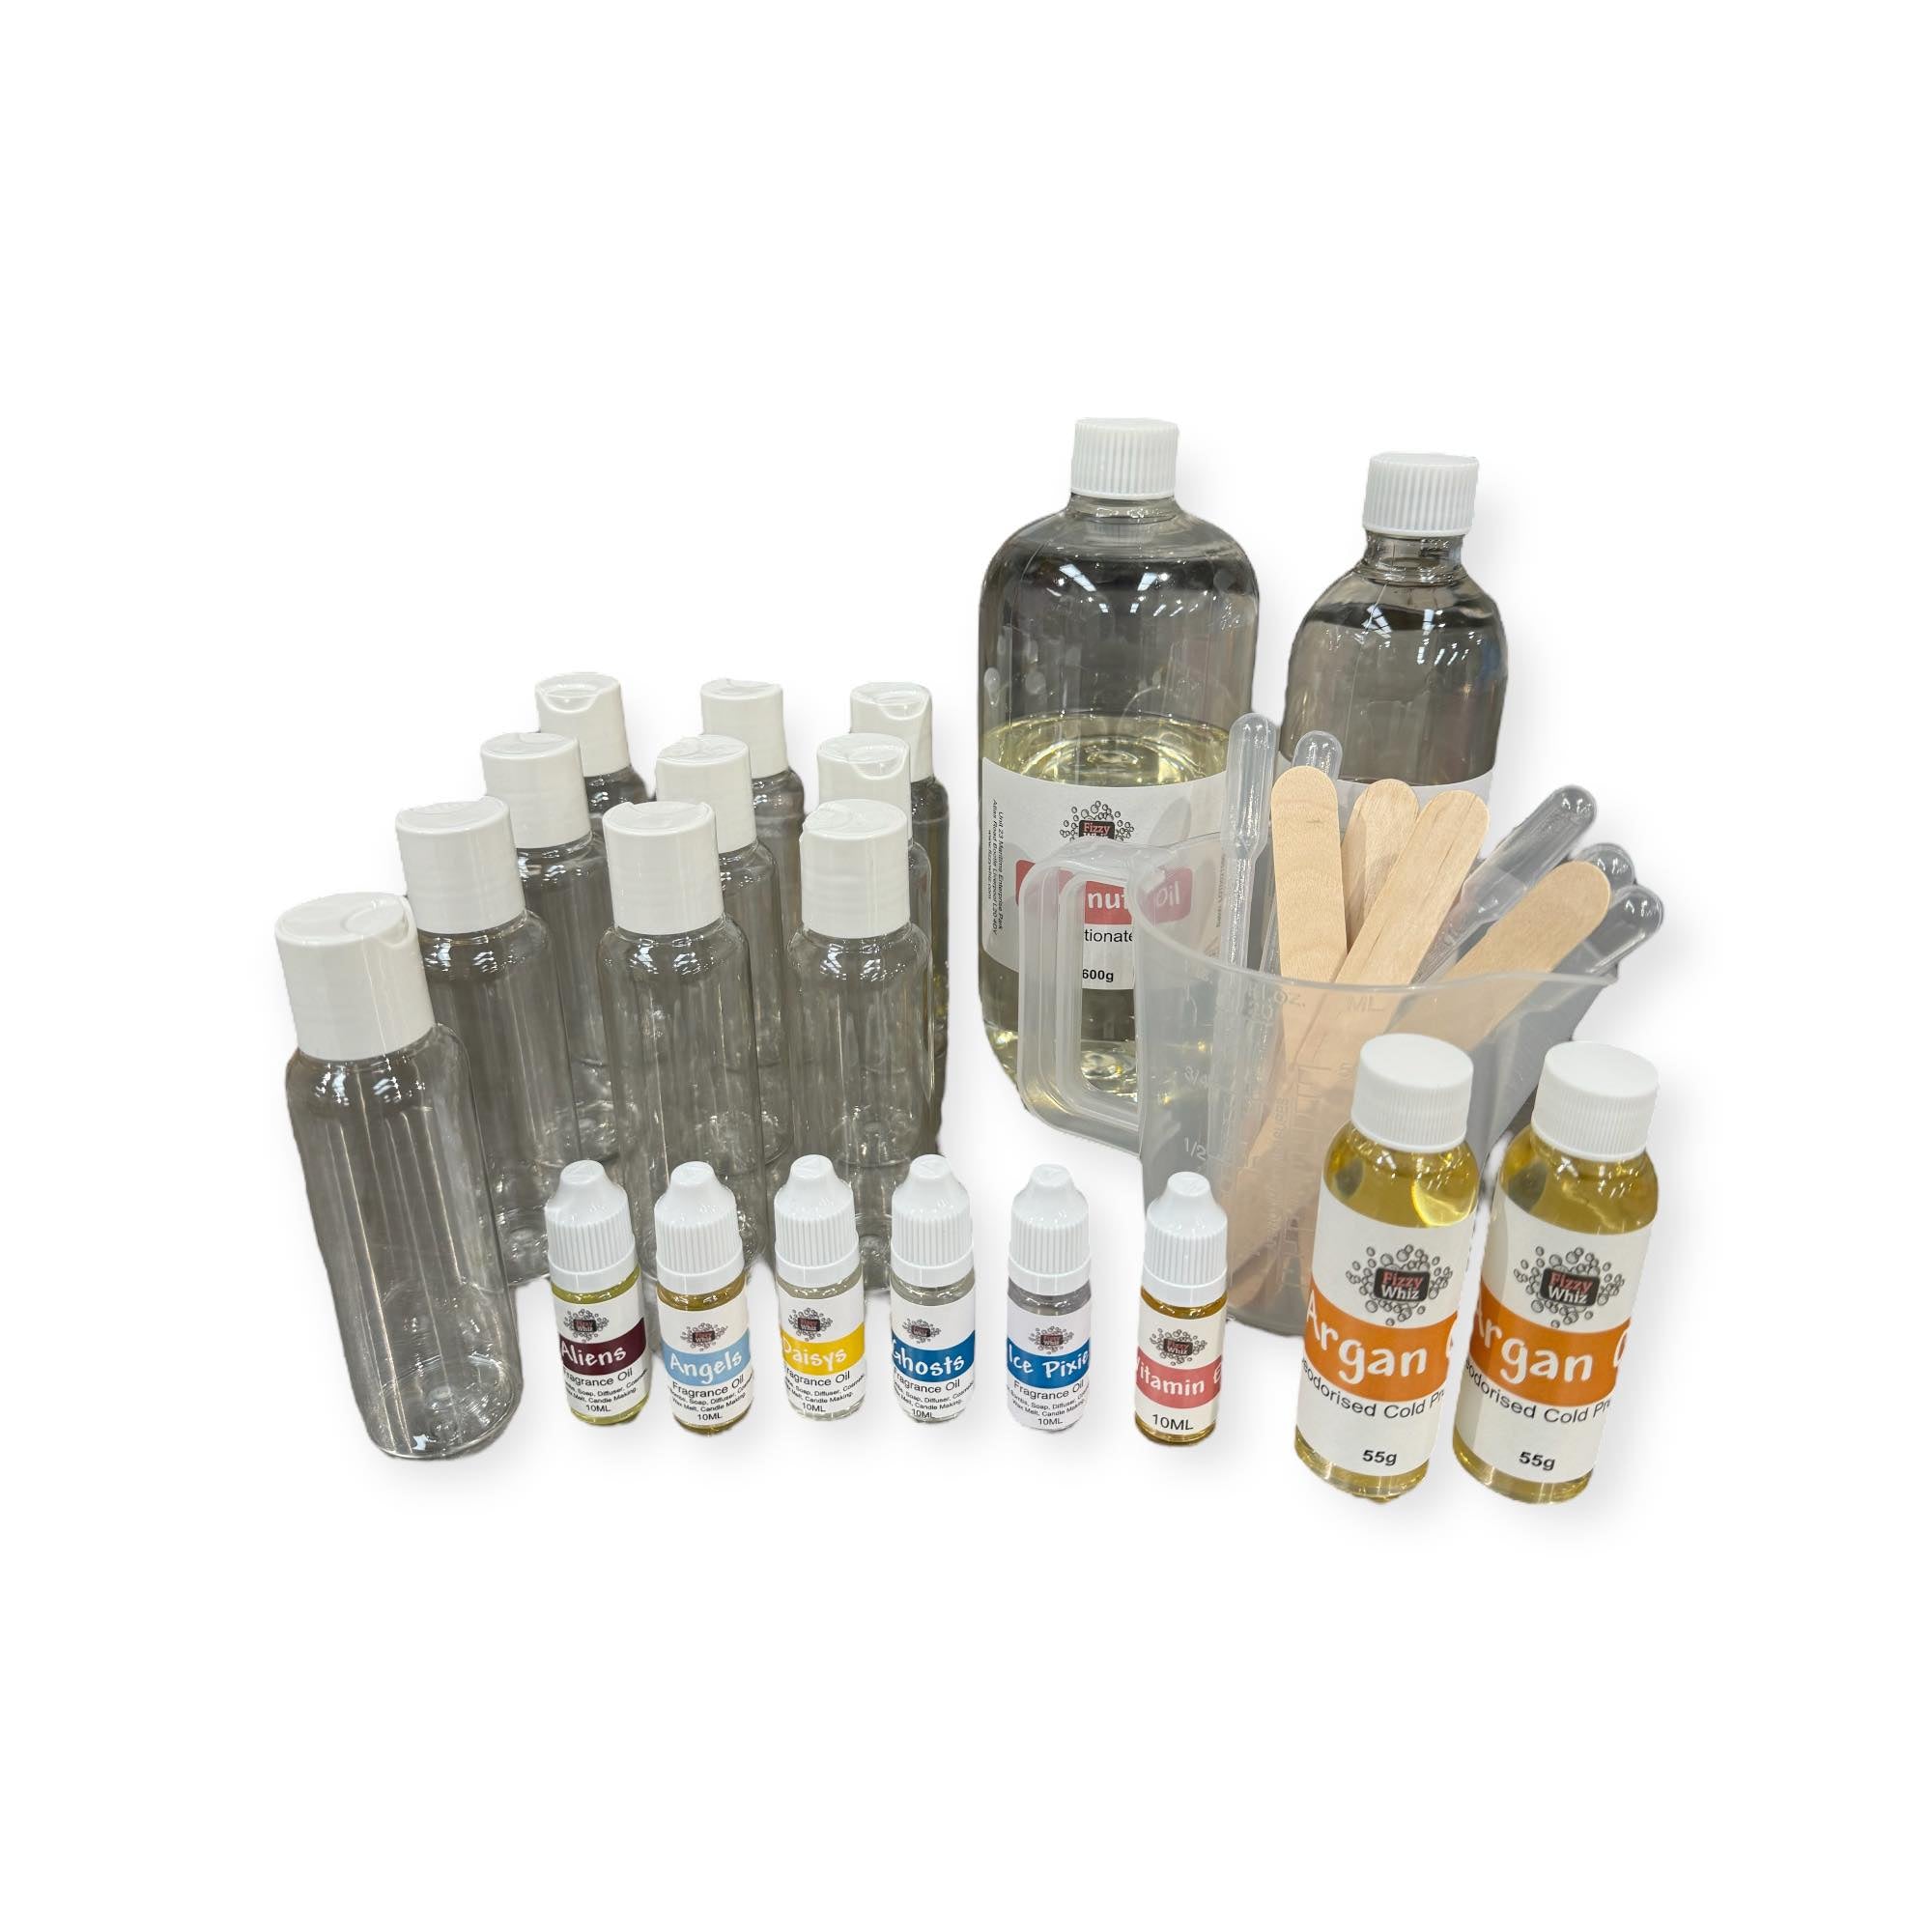 Body Oil Kit - Perfume Scents